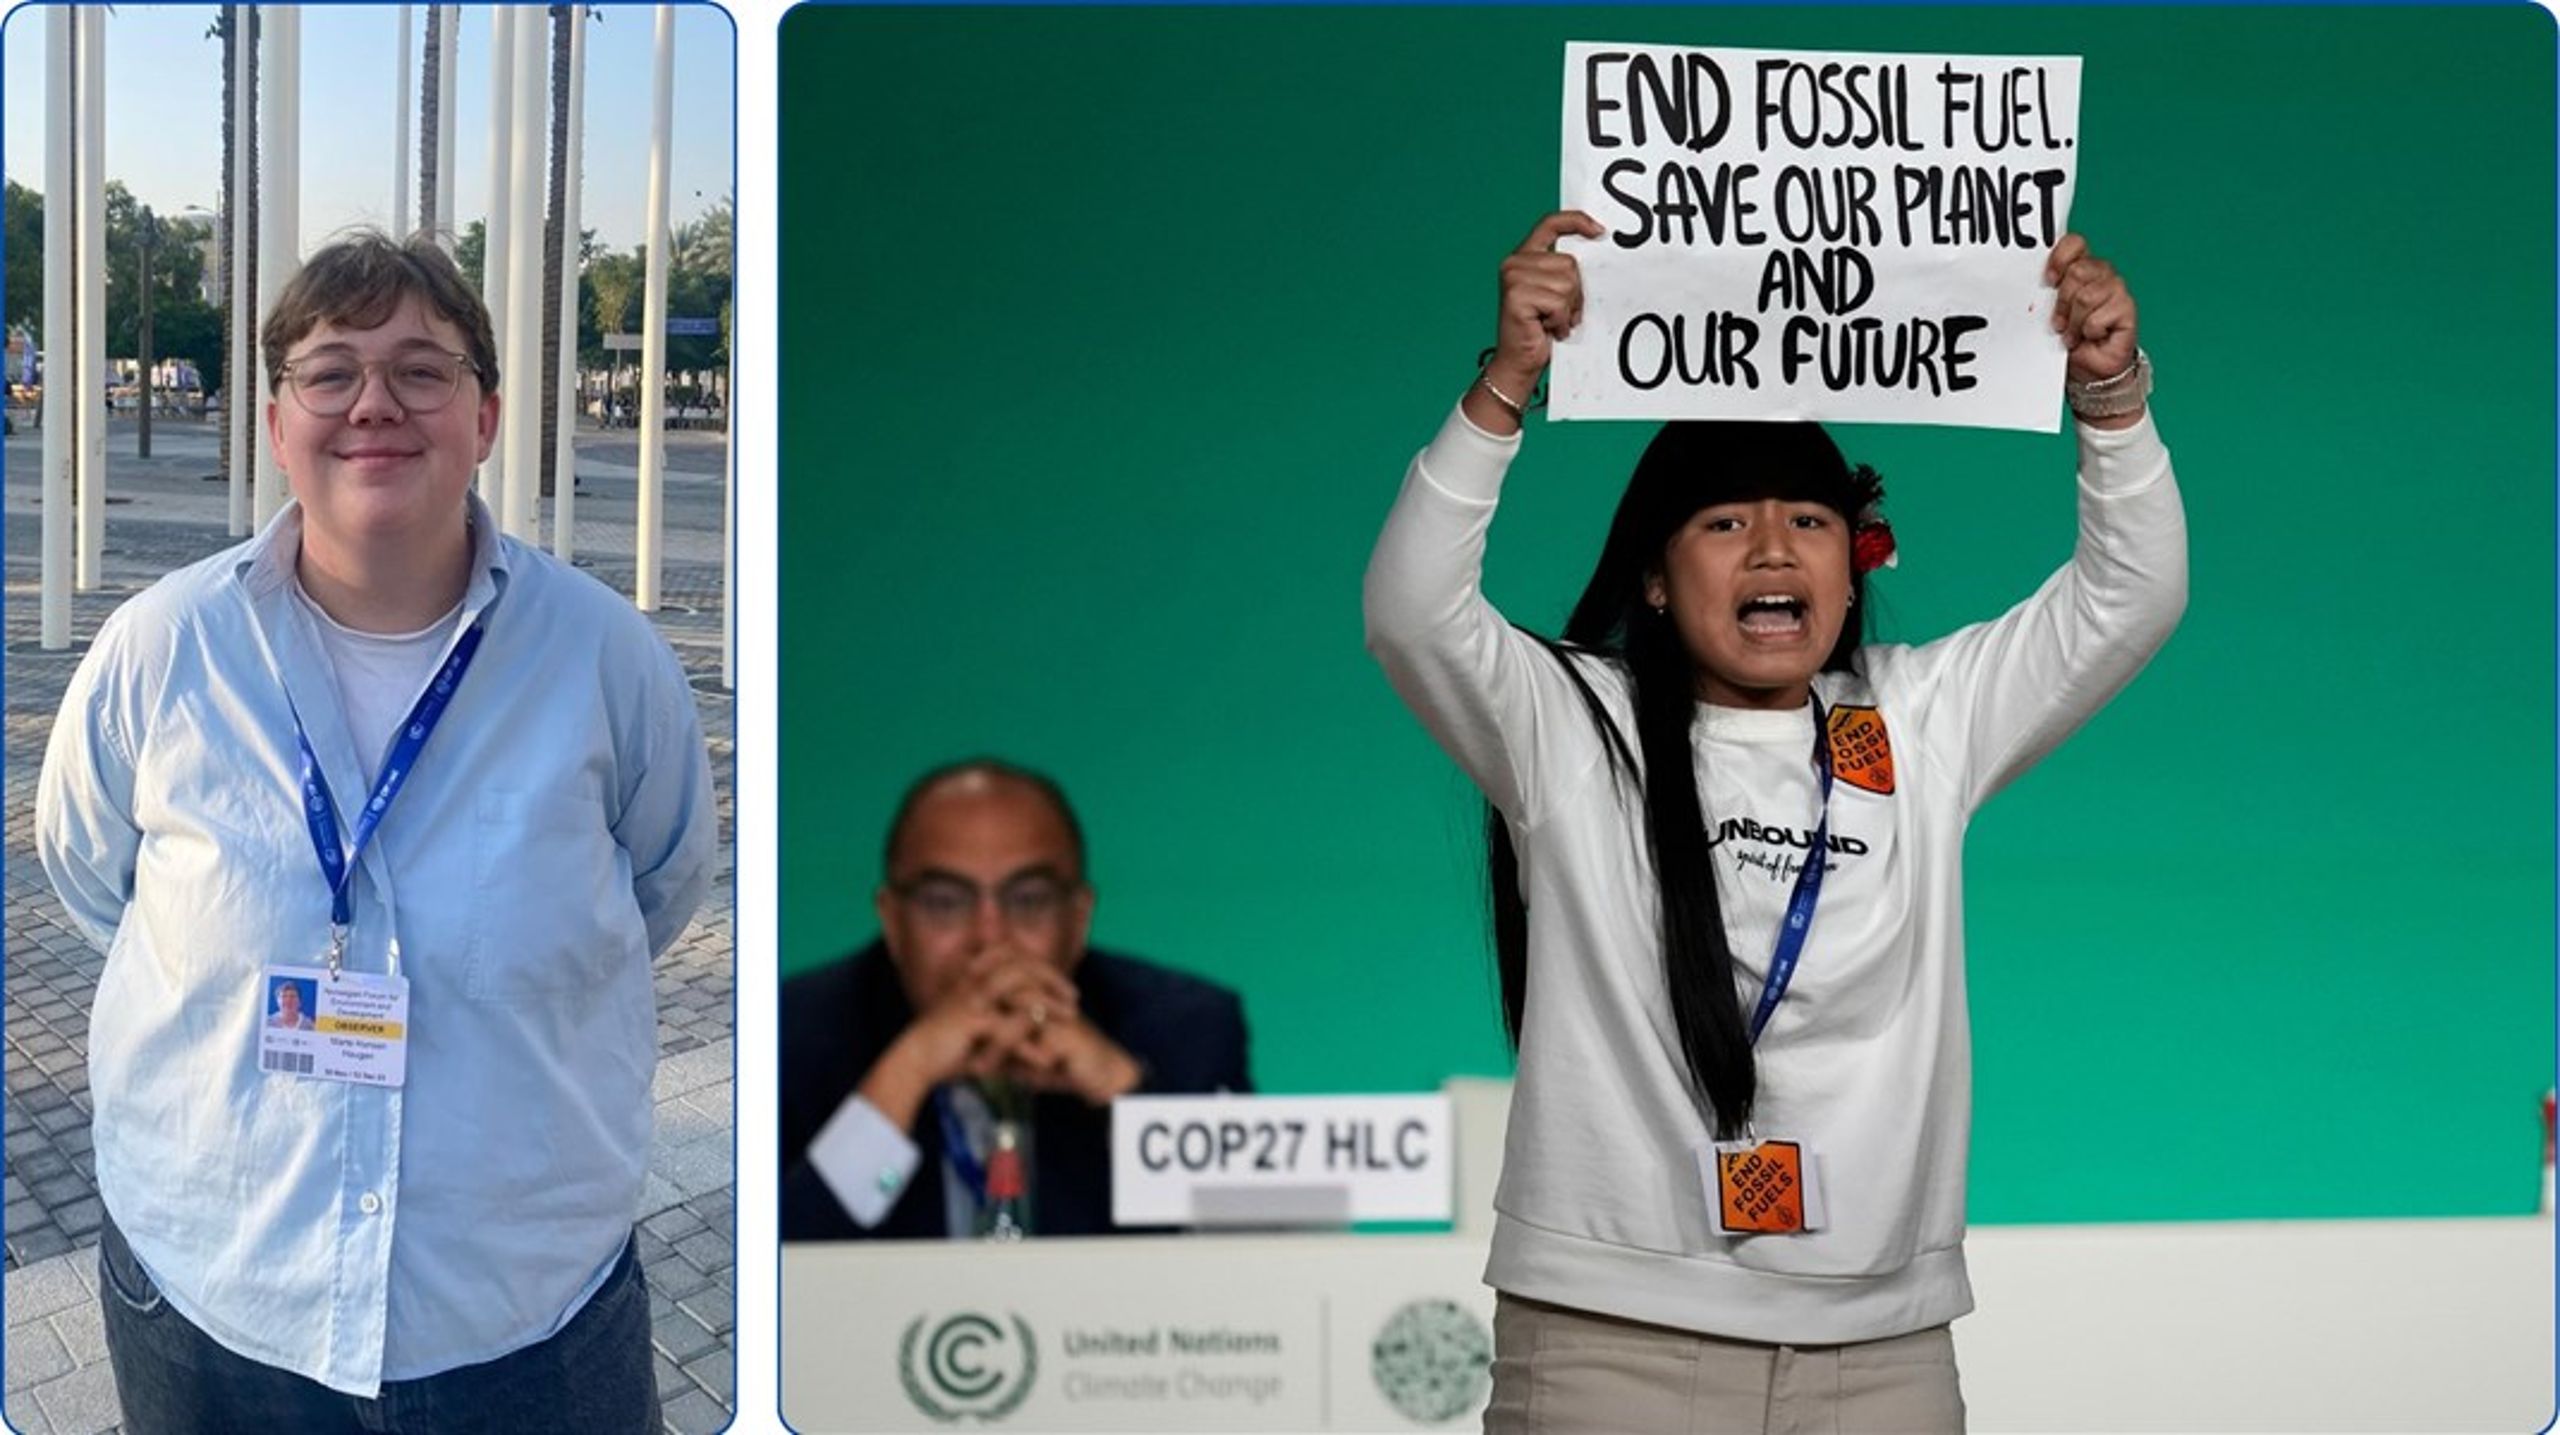 Changemaker-leder Marte Hansen Haugan har deltatt på klimatoppmøtet i Dubai som representant fra sivilsamfunnet, og deler sine tanker rundt møtet. Til høyre er protesterer den indiske klimaaktivisten&nbsp;Licypriya Kangujam mot fossil energi under et plenumsmøte på COP28.